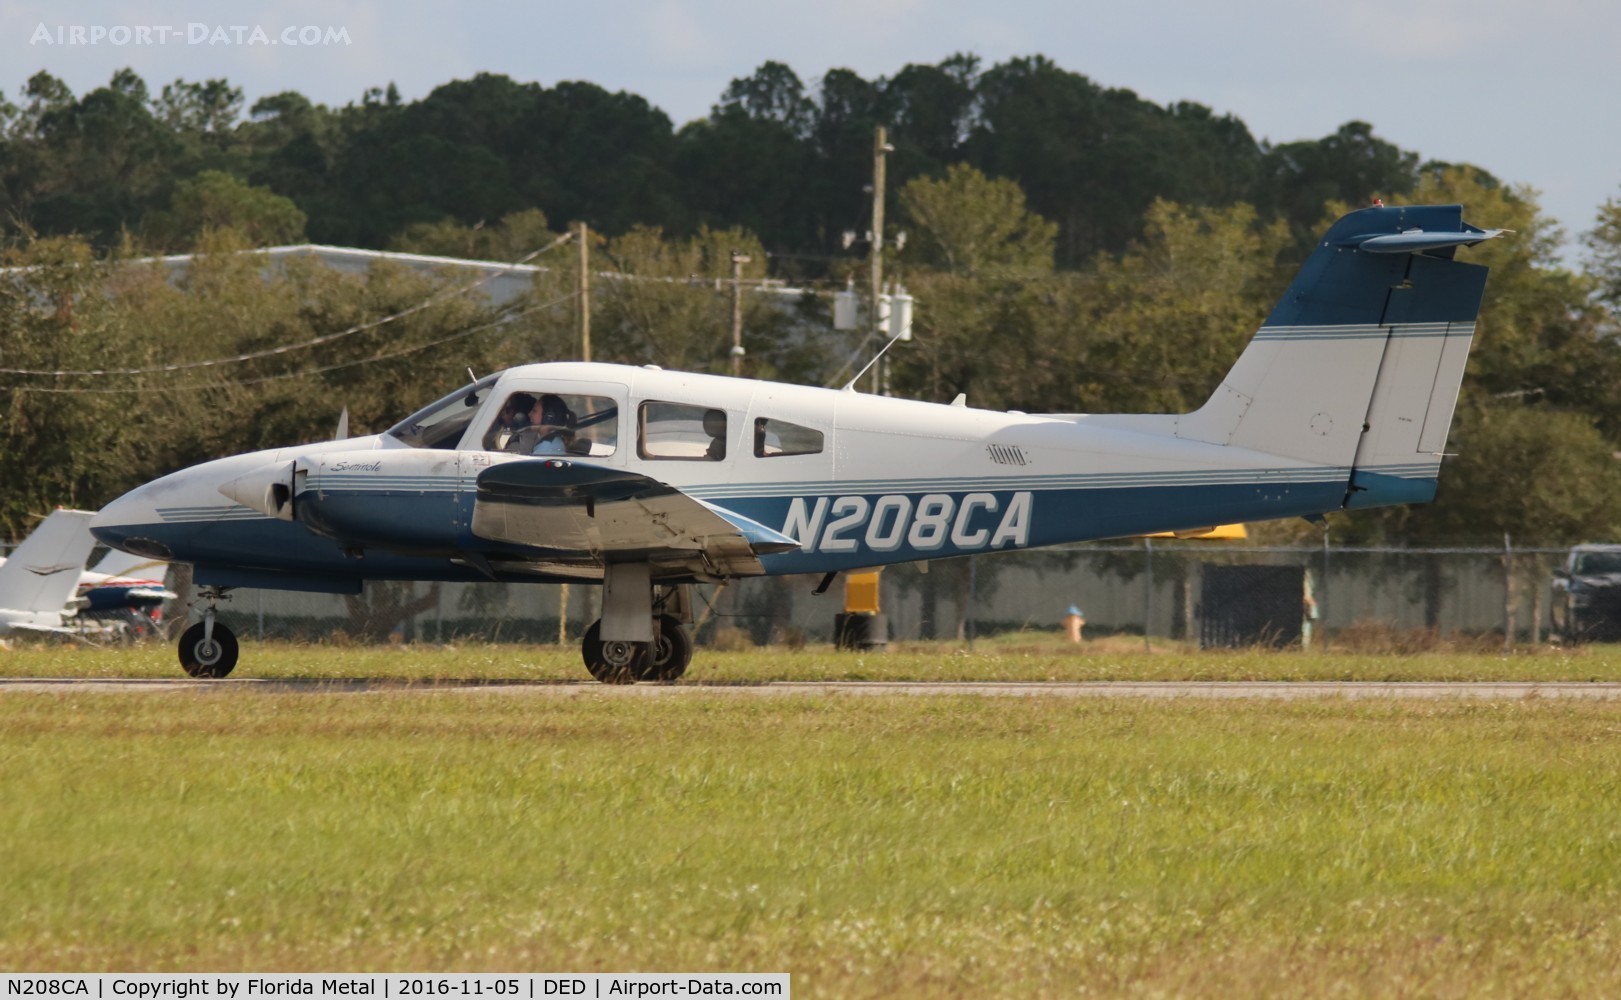 N208CA, 2002 Piper PA-44-180 Seminole C/N 4496161, Piper Seminole